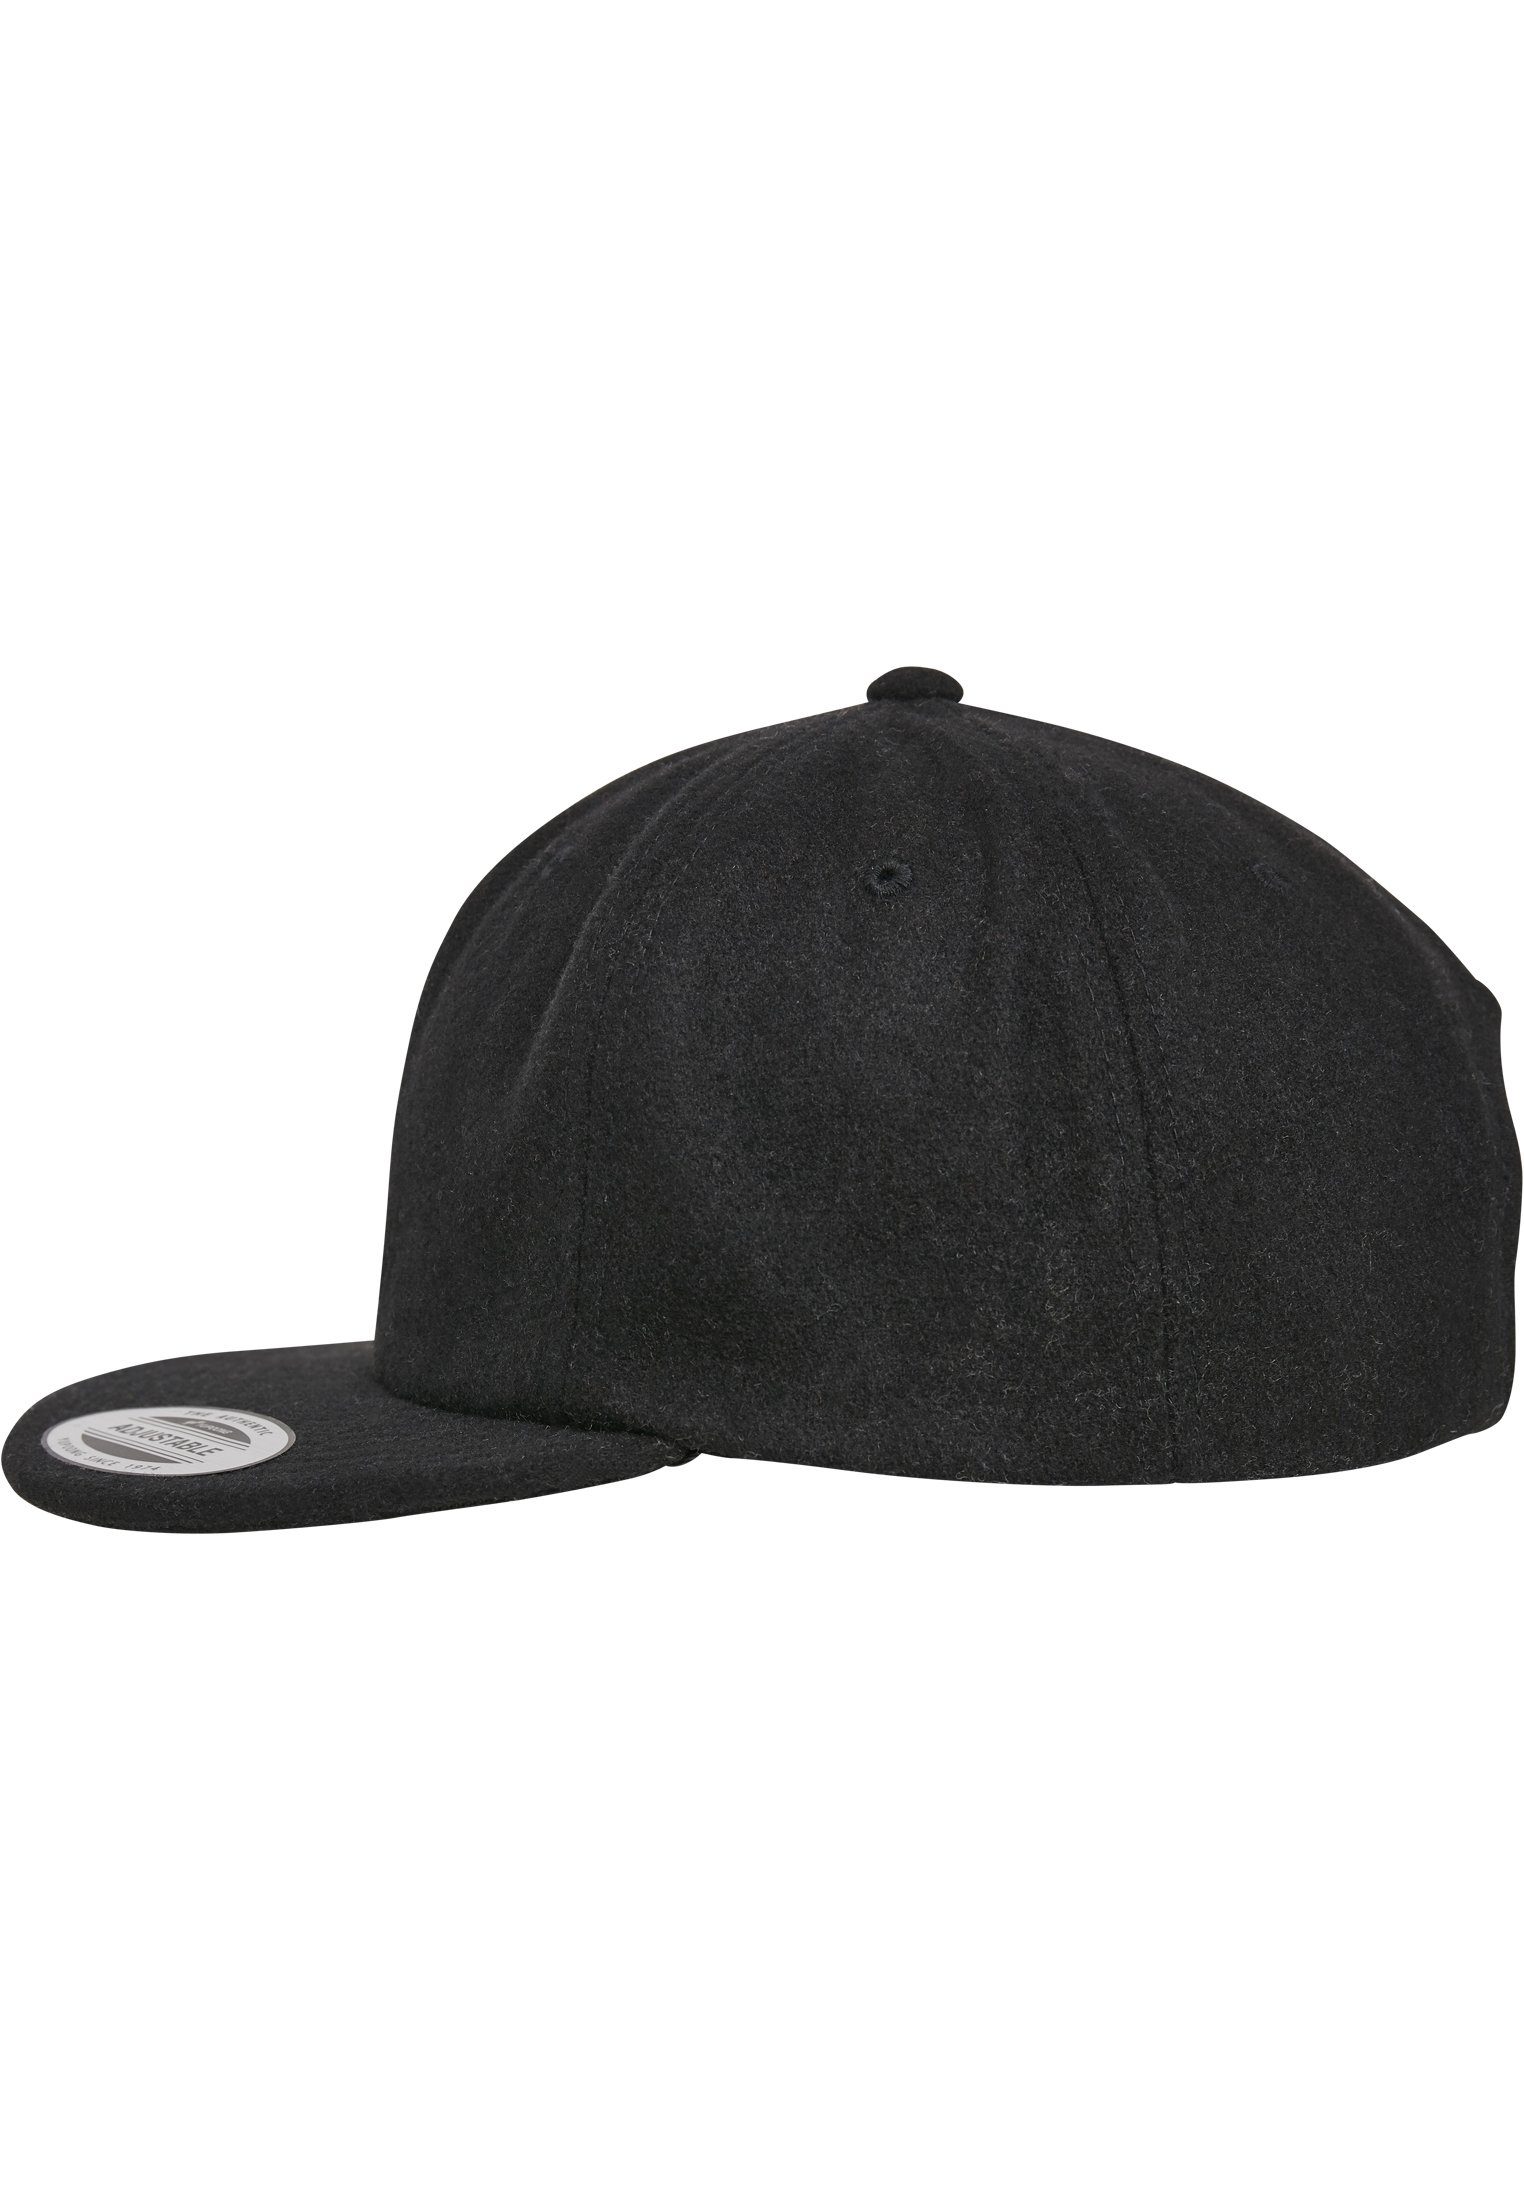 Flex Flexfit Cap black Melton Snapback Cap